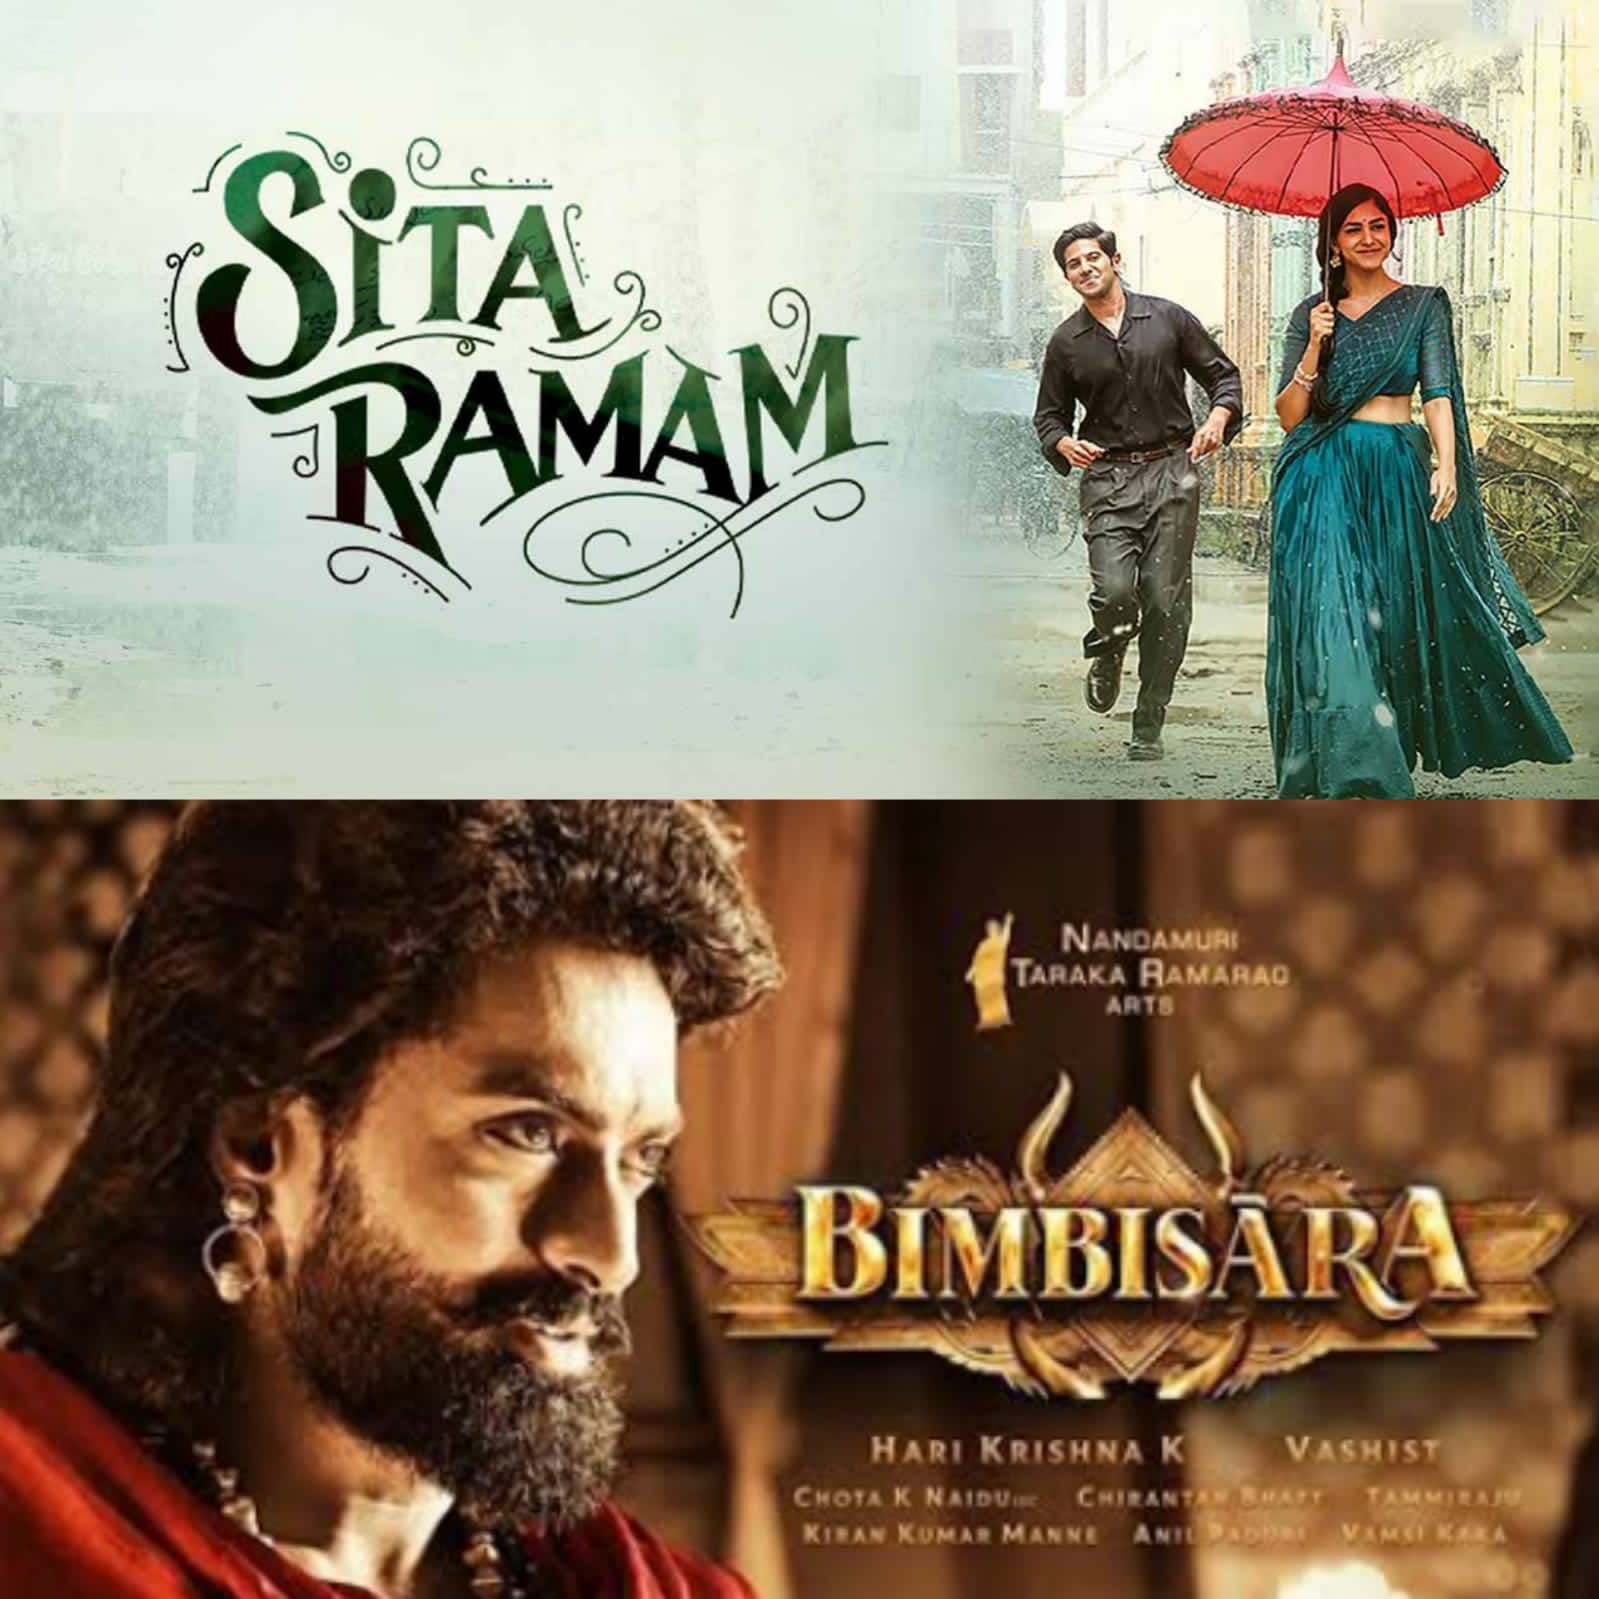 Bimbisara VS Sita Ramam Box Office Clash